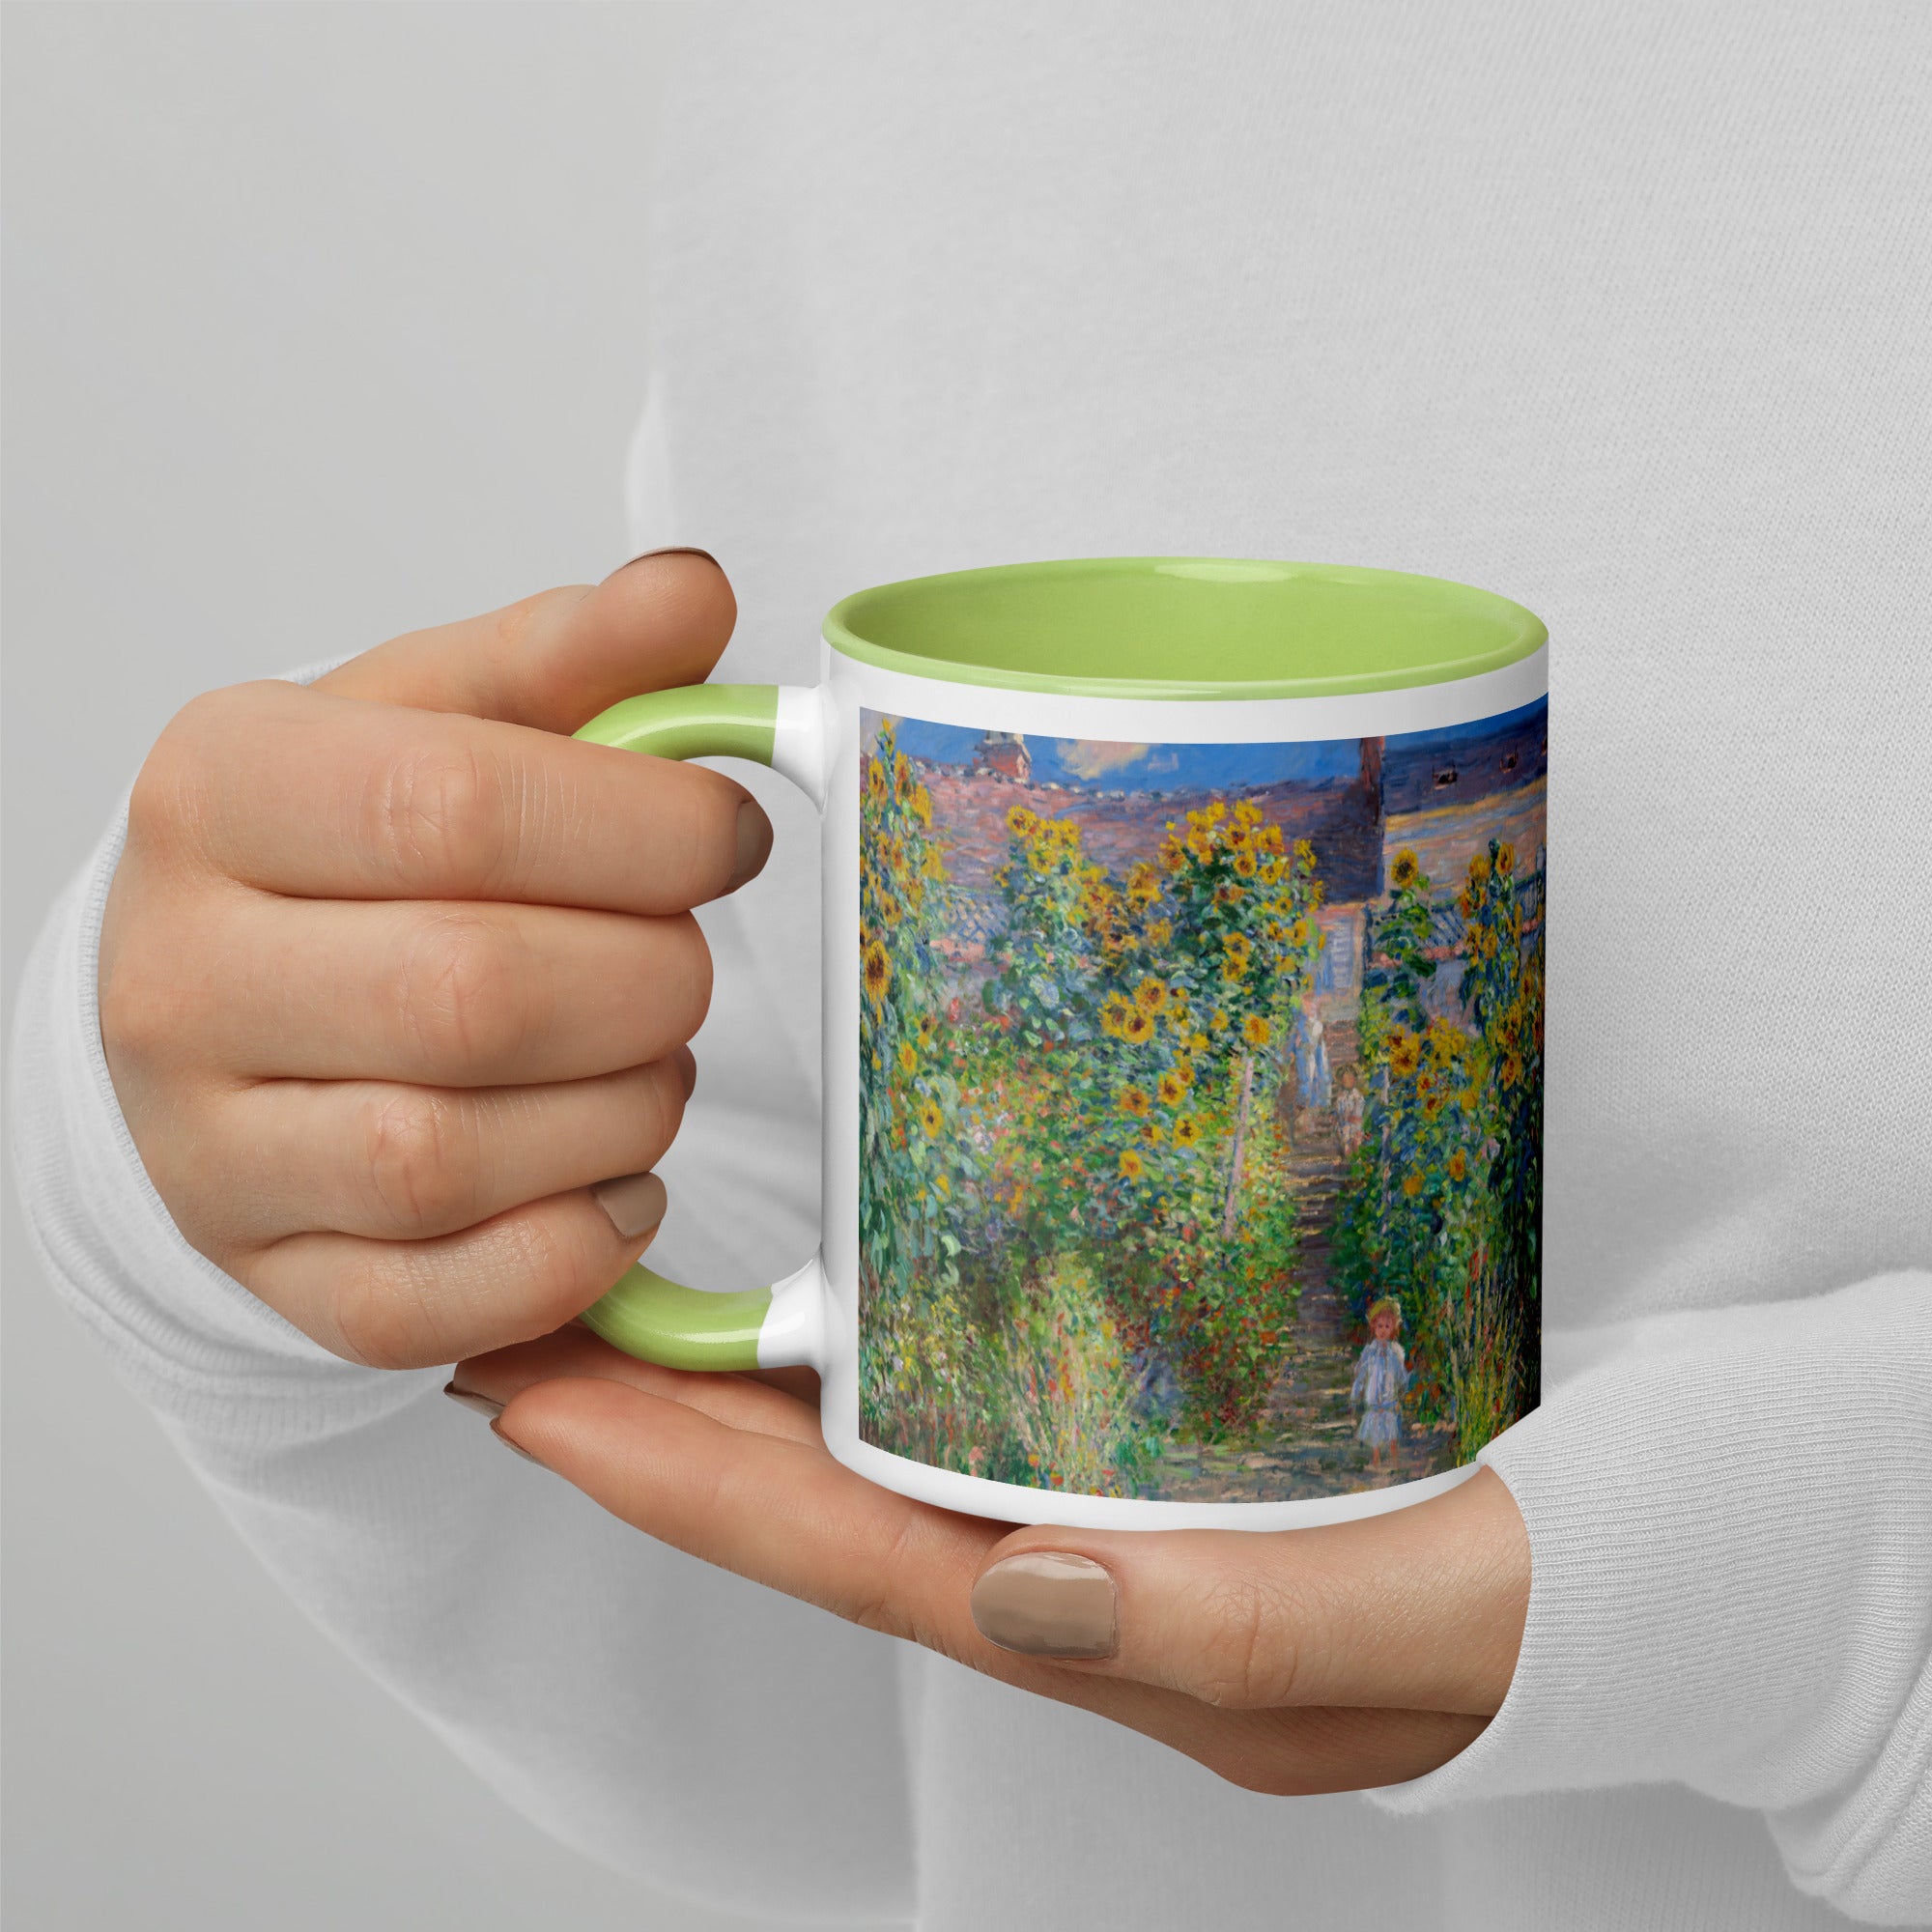 Claude Monet 'The Artist's Garden at Vétheuil' Famous Painting Ceramic Mug | Premium Art Mug